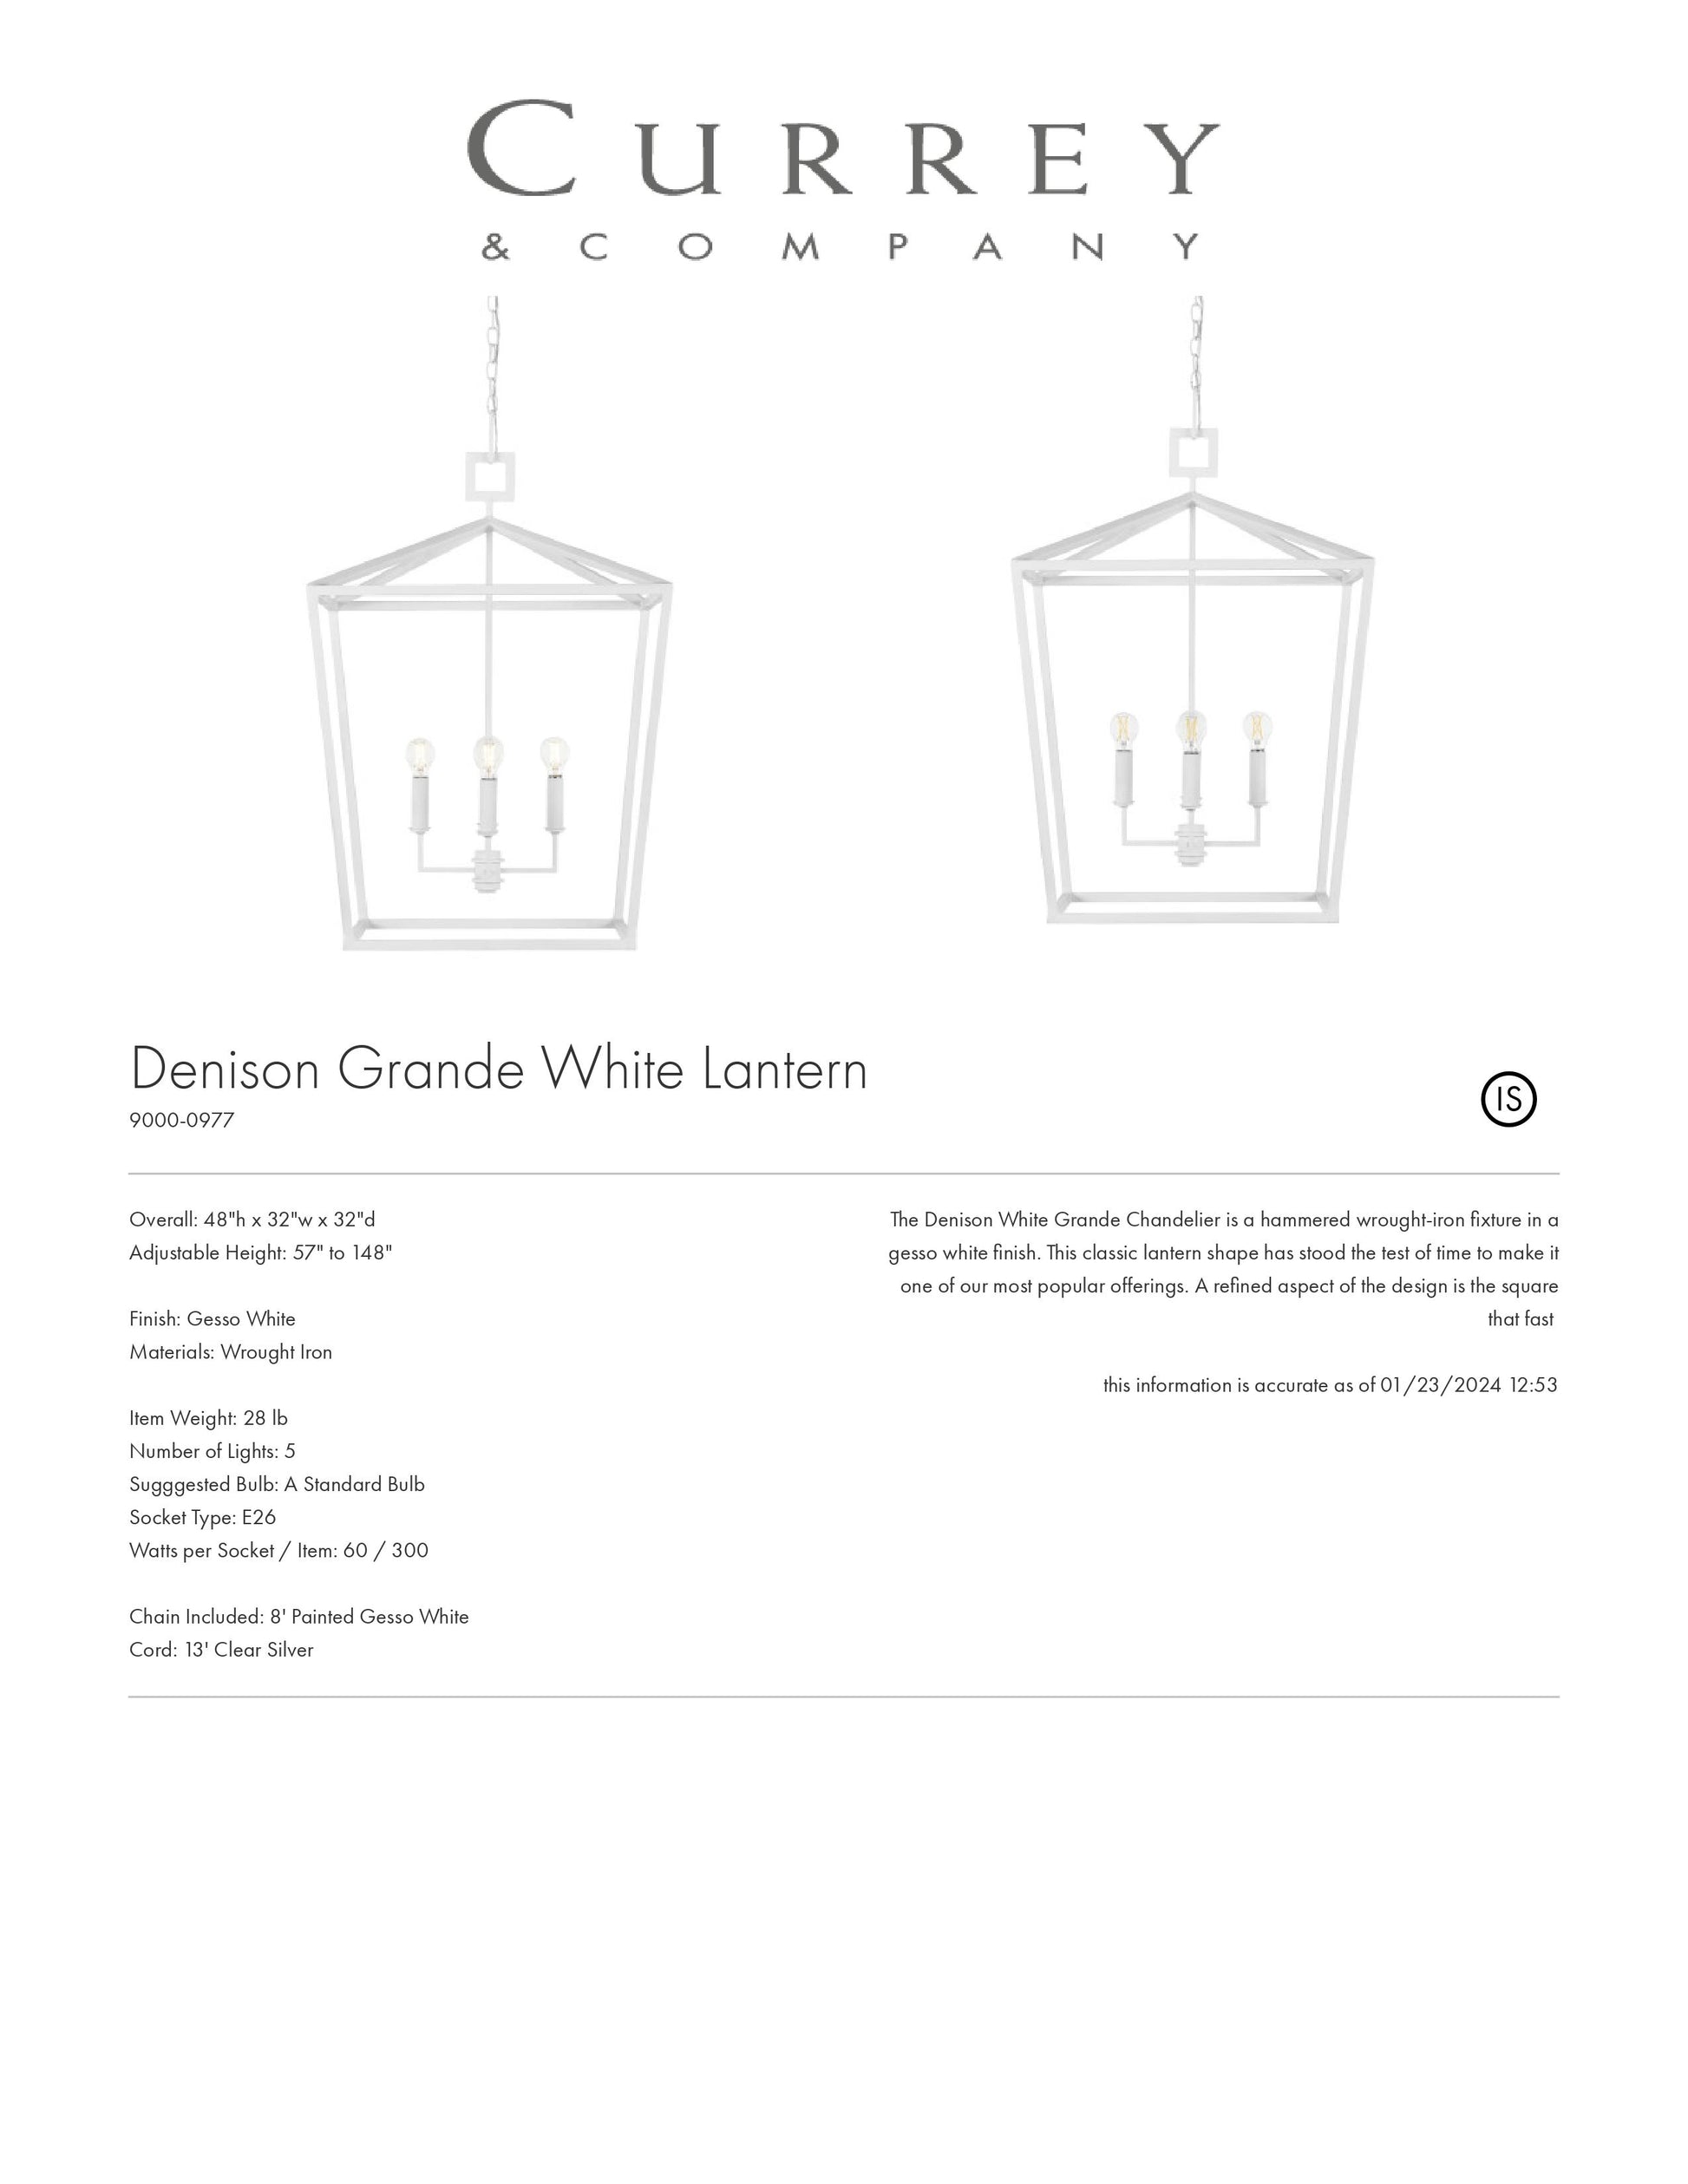 currey denison chandelier grande white tearsheet